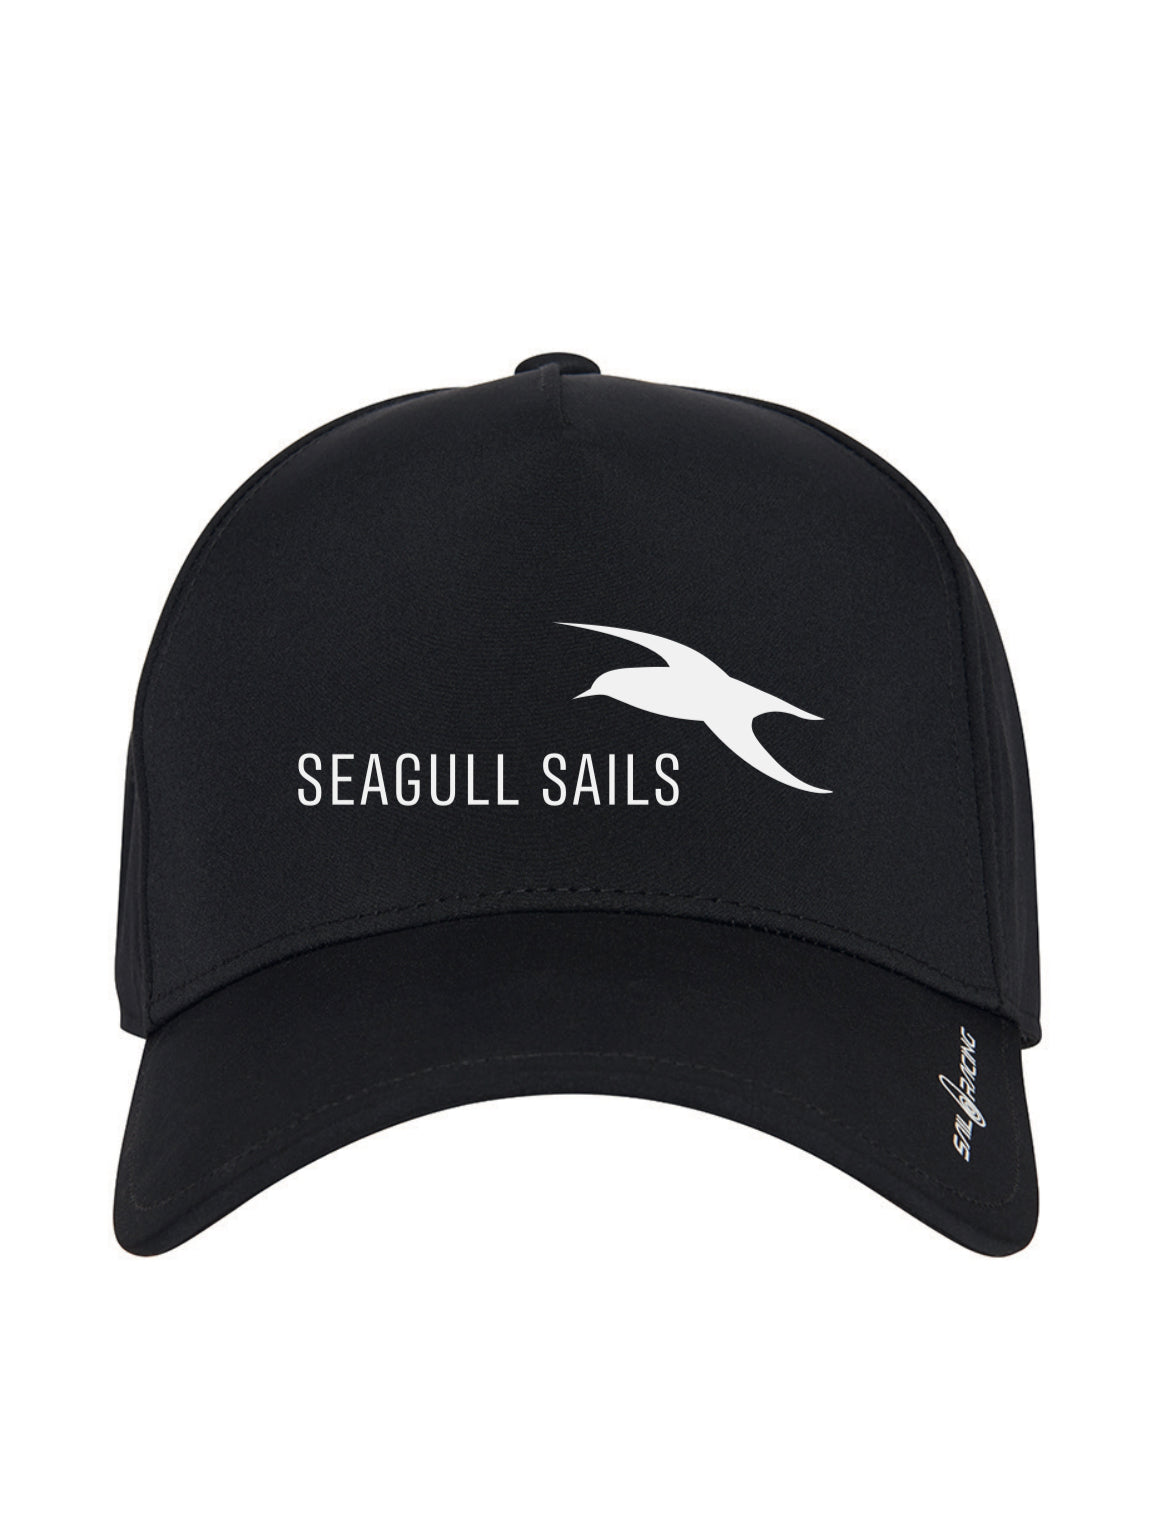 Seagull Sails Spray Team Cap